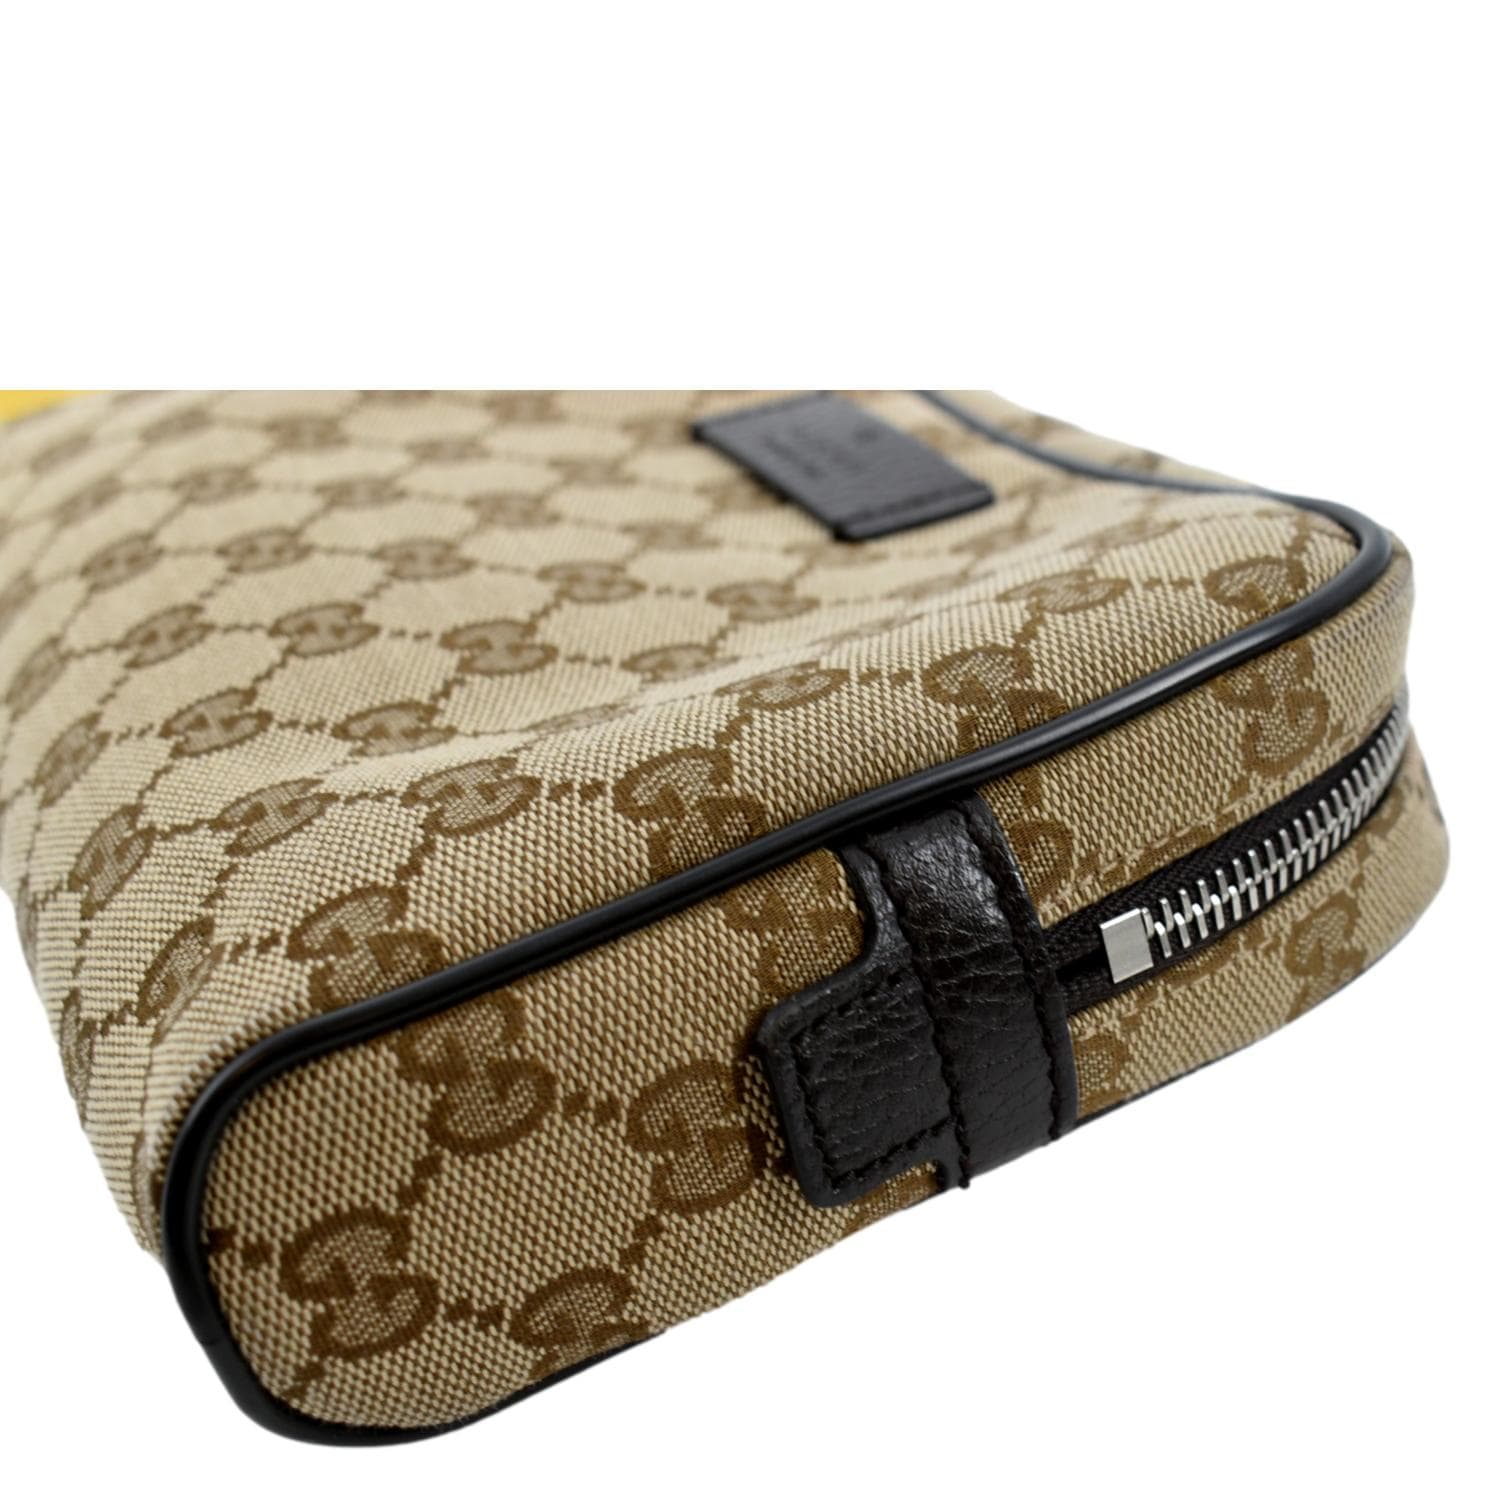 Gucci Belt Bag Fanny Pack GG Waist Brown Canvas Clutch